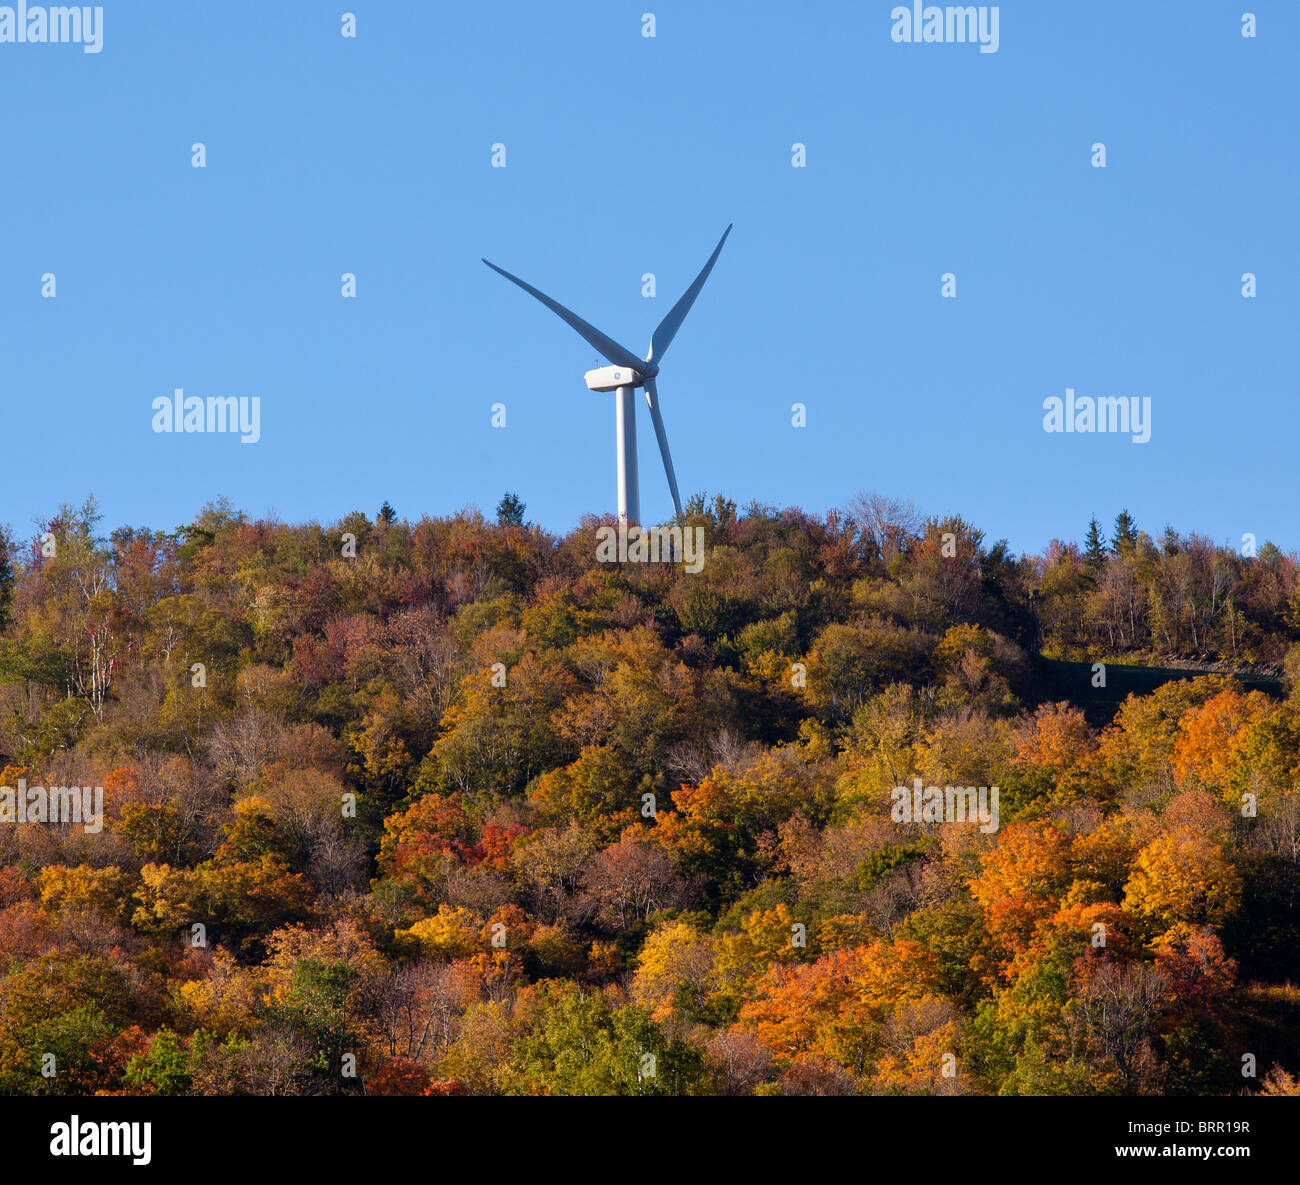 Großen Windgenerator auf Hügel über herbstliche Bäume Stockfoto